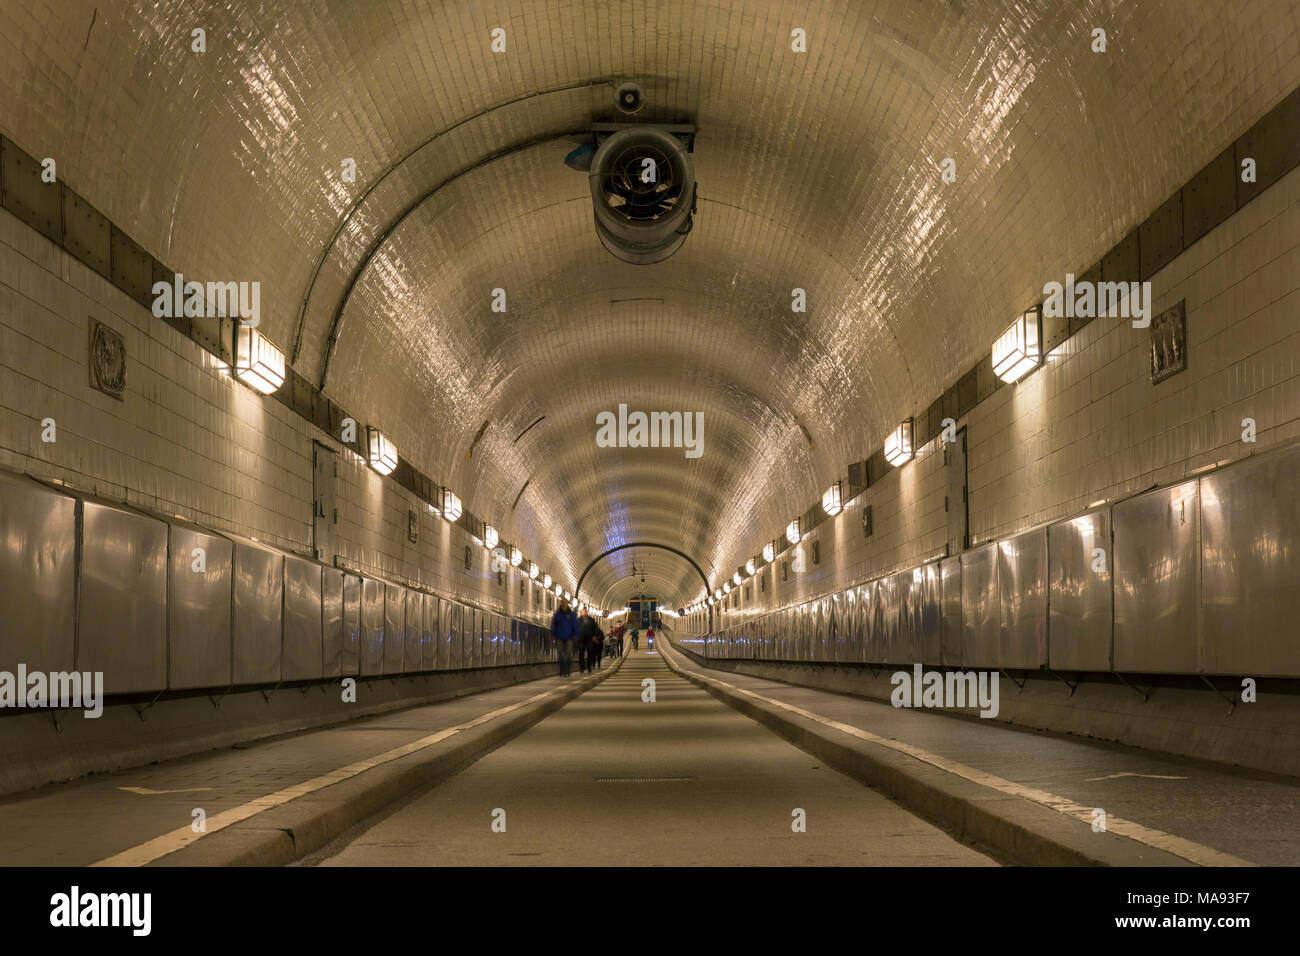 San Pauli-Elbtunnel / St. Pauli túnel del Elba / Alter Elbtunnel / antiguo túnel del Elba, túnel de peatones y de vehículos en Hamburgo, Alemania. Foto de stock